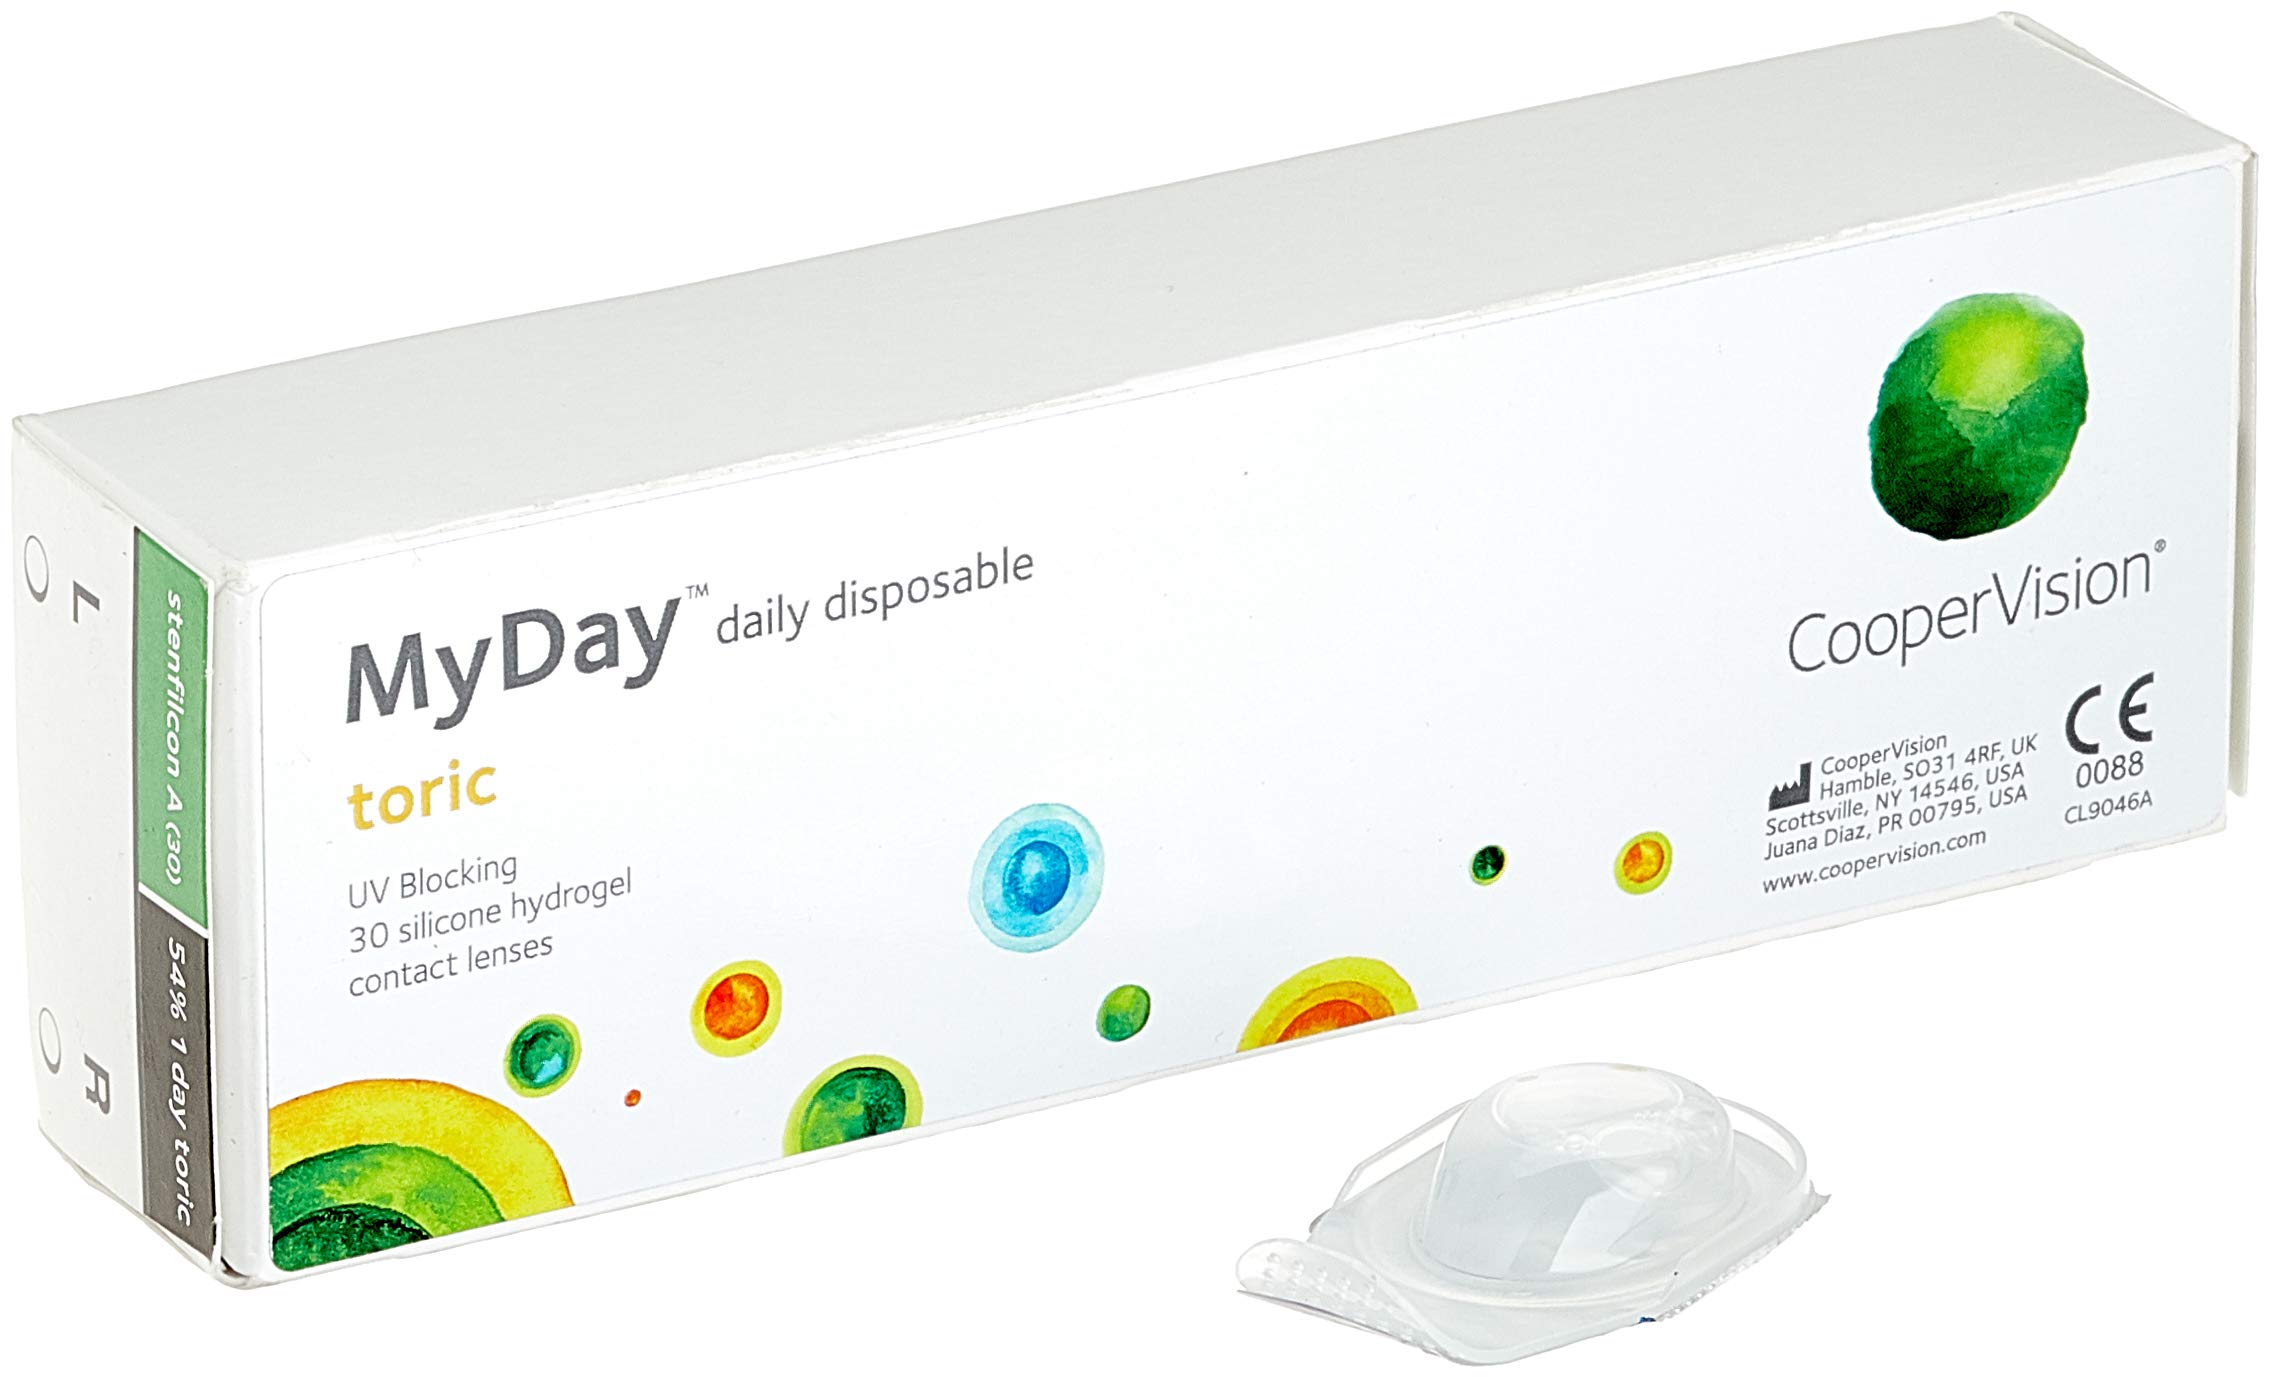 MYDAY Daily disposable Torisch Tageslinsen weich, 30 Stück / BC 8.6 mm / Dia 14.5 mm / CYL -2,25 / ACHSE 90 / -10 Dioptrien